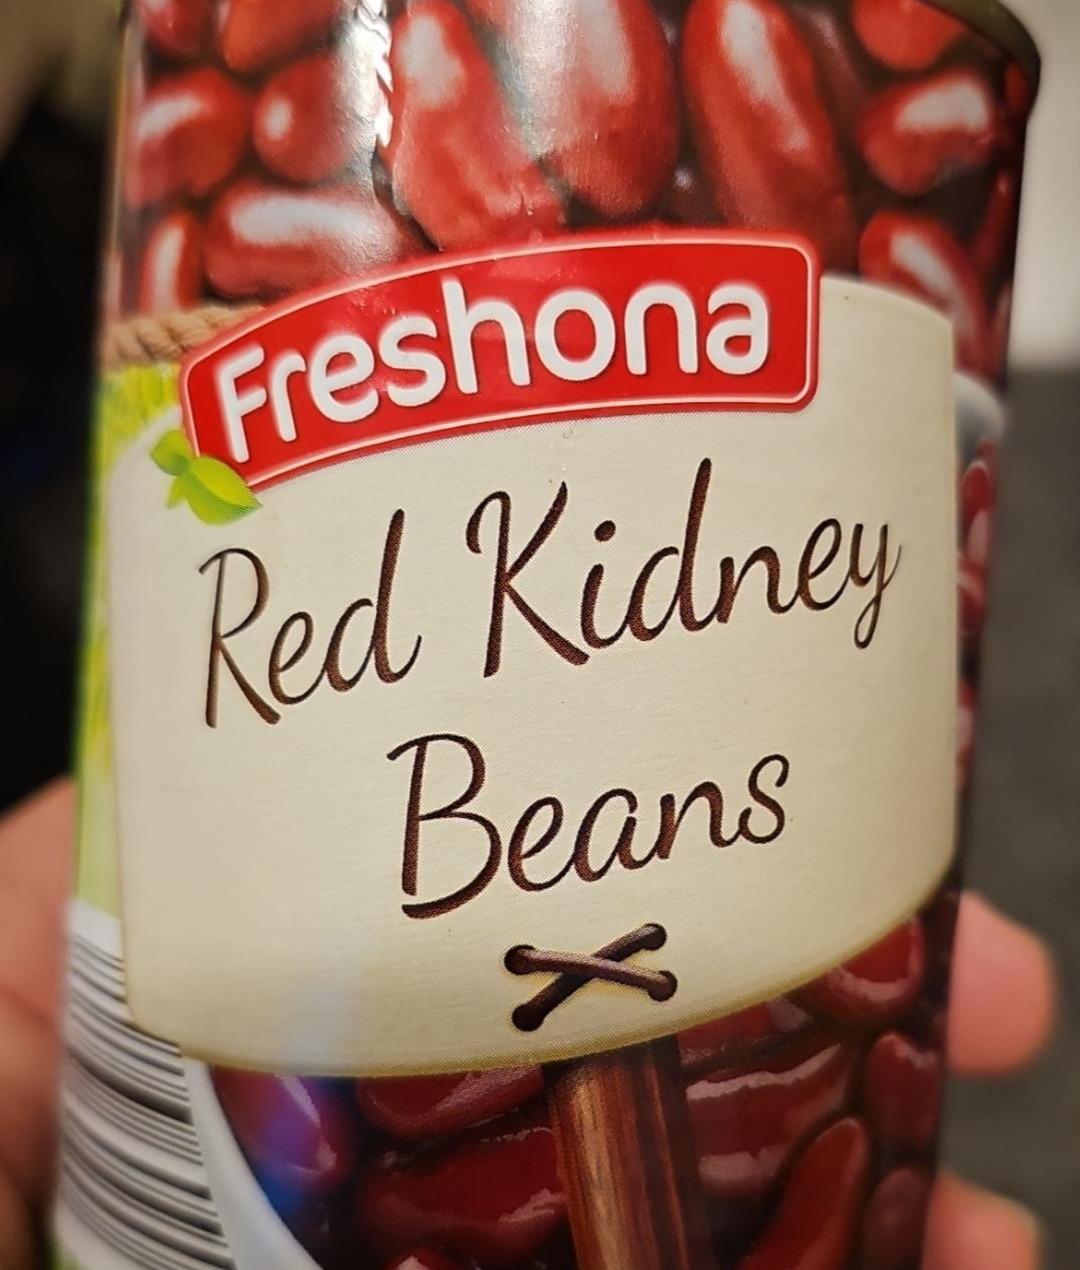 Fotografie - Red Kidney Beans Freshona